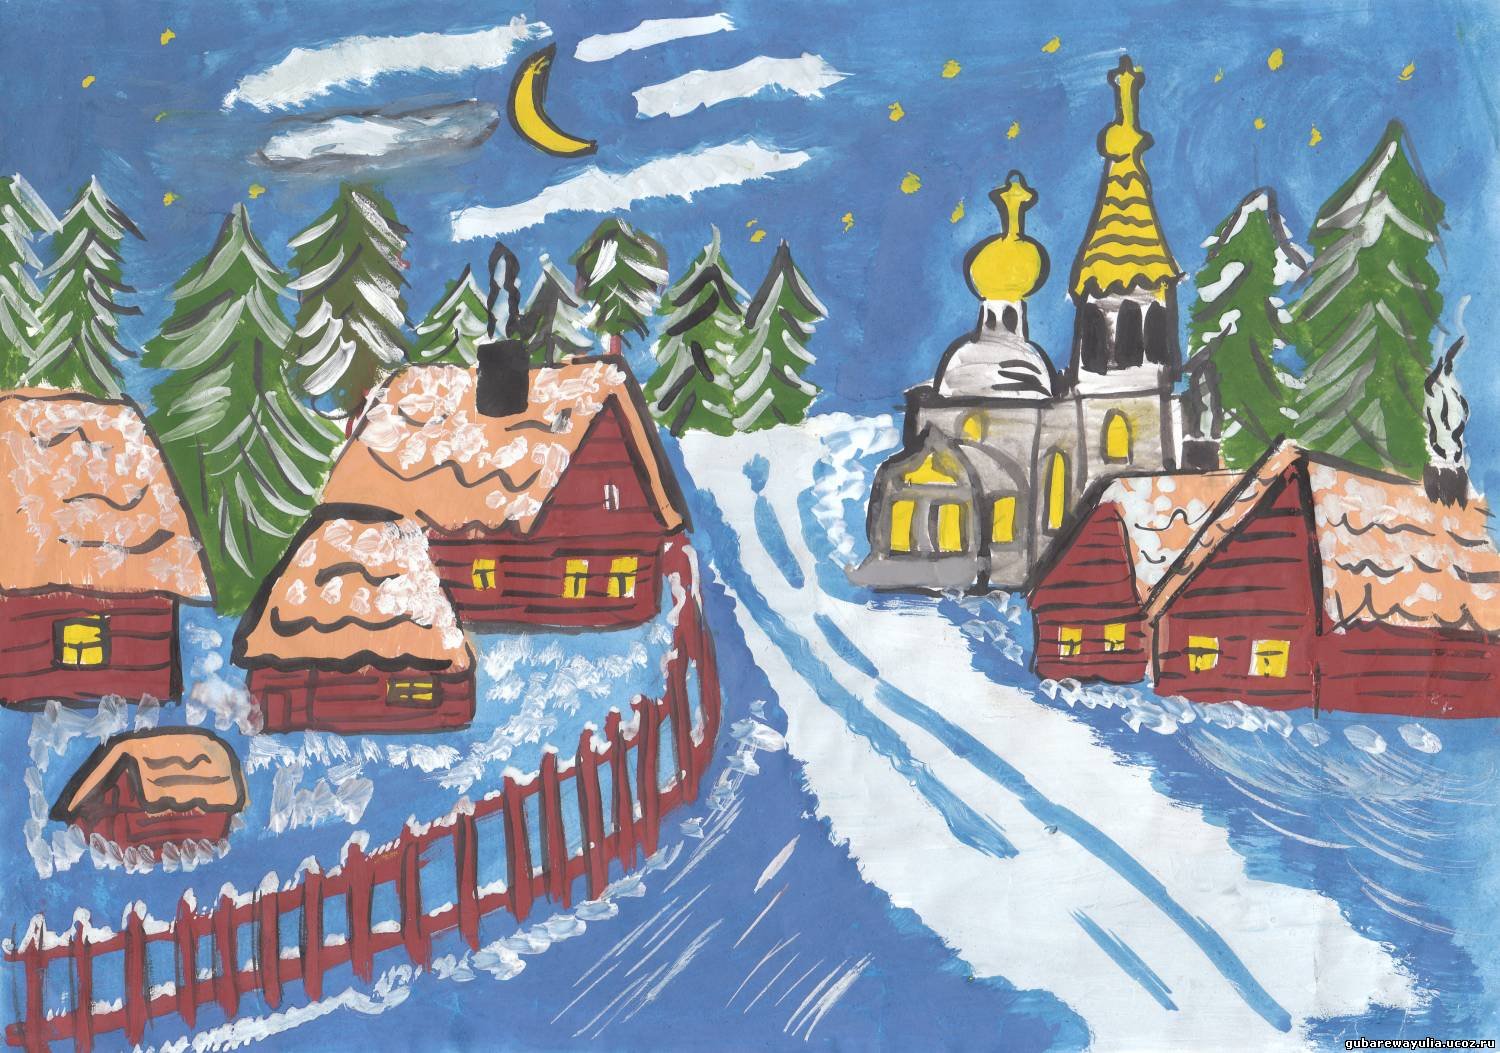 Иллюстрация к стихотворению Никитина встреча зимы